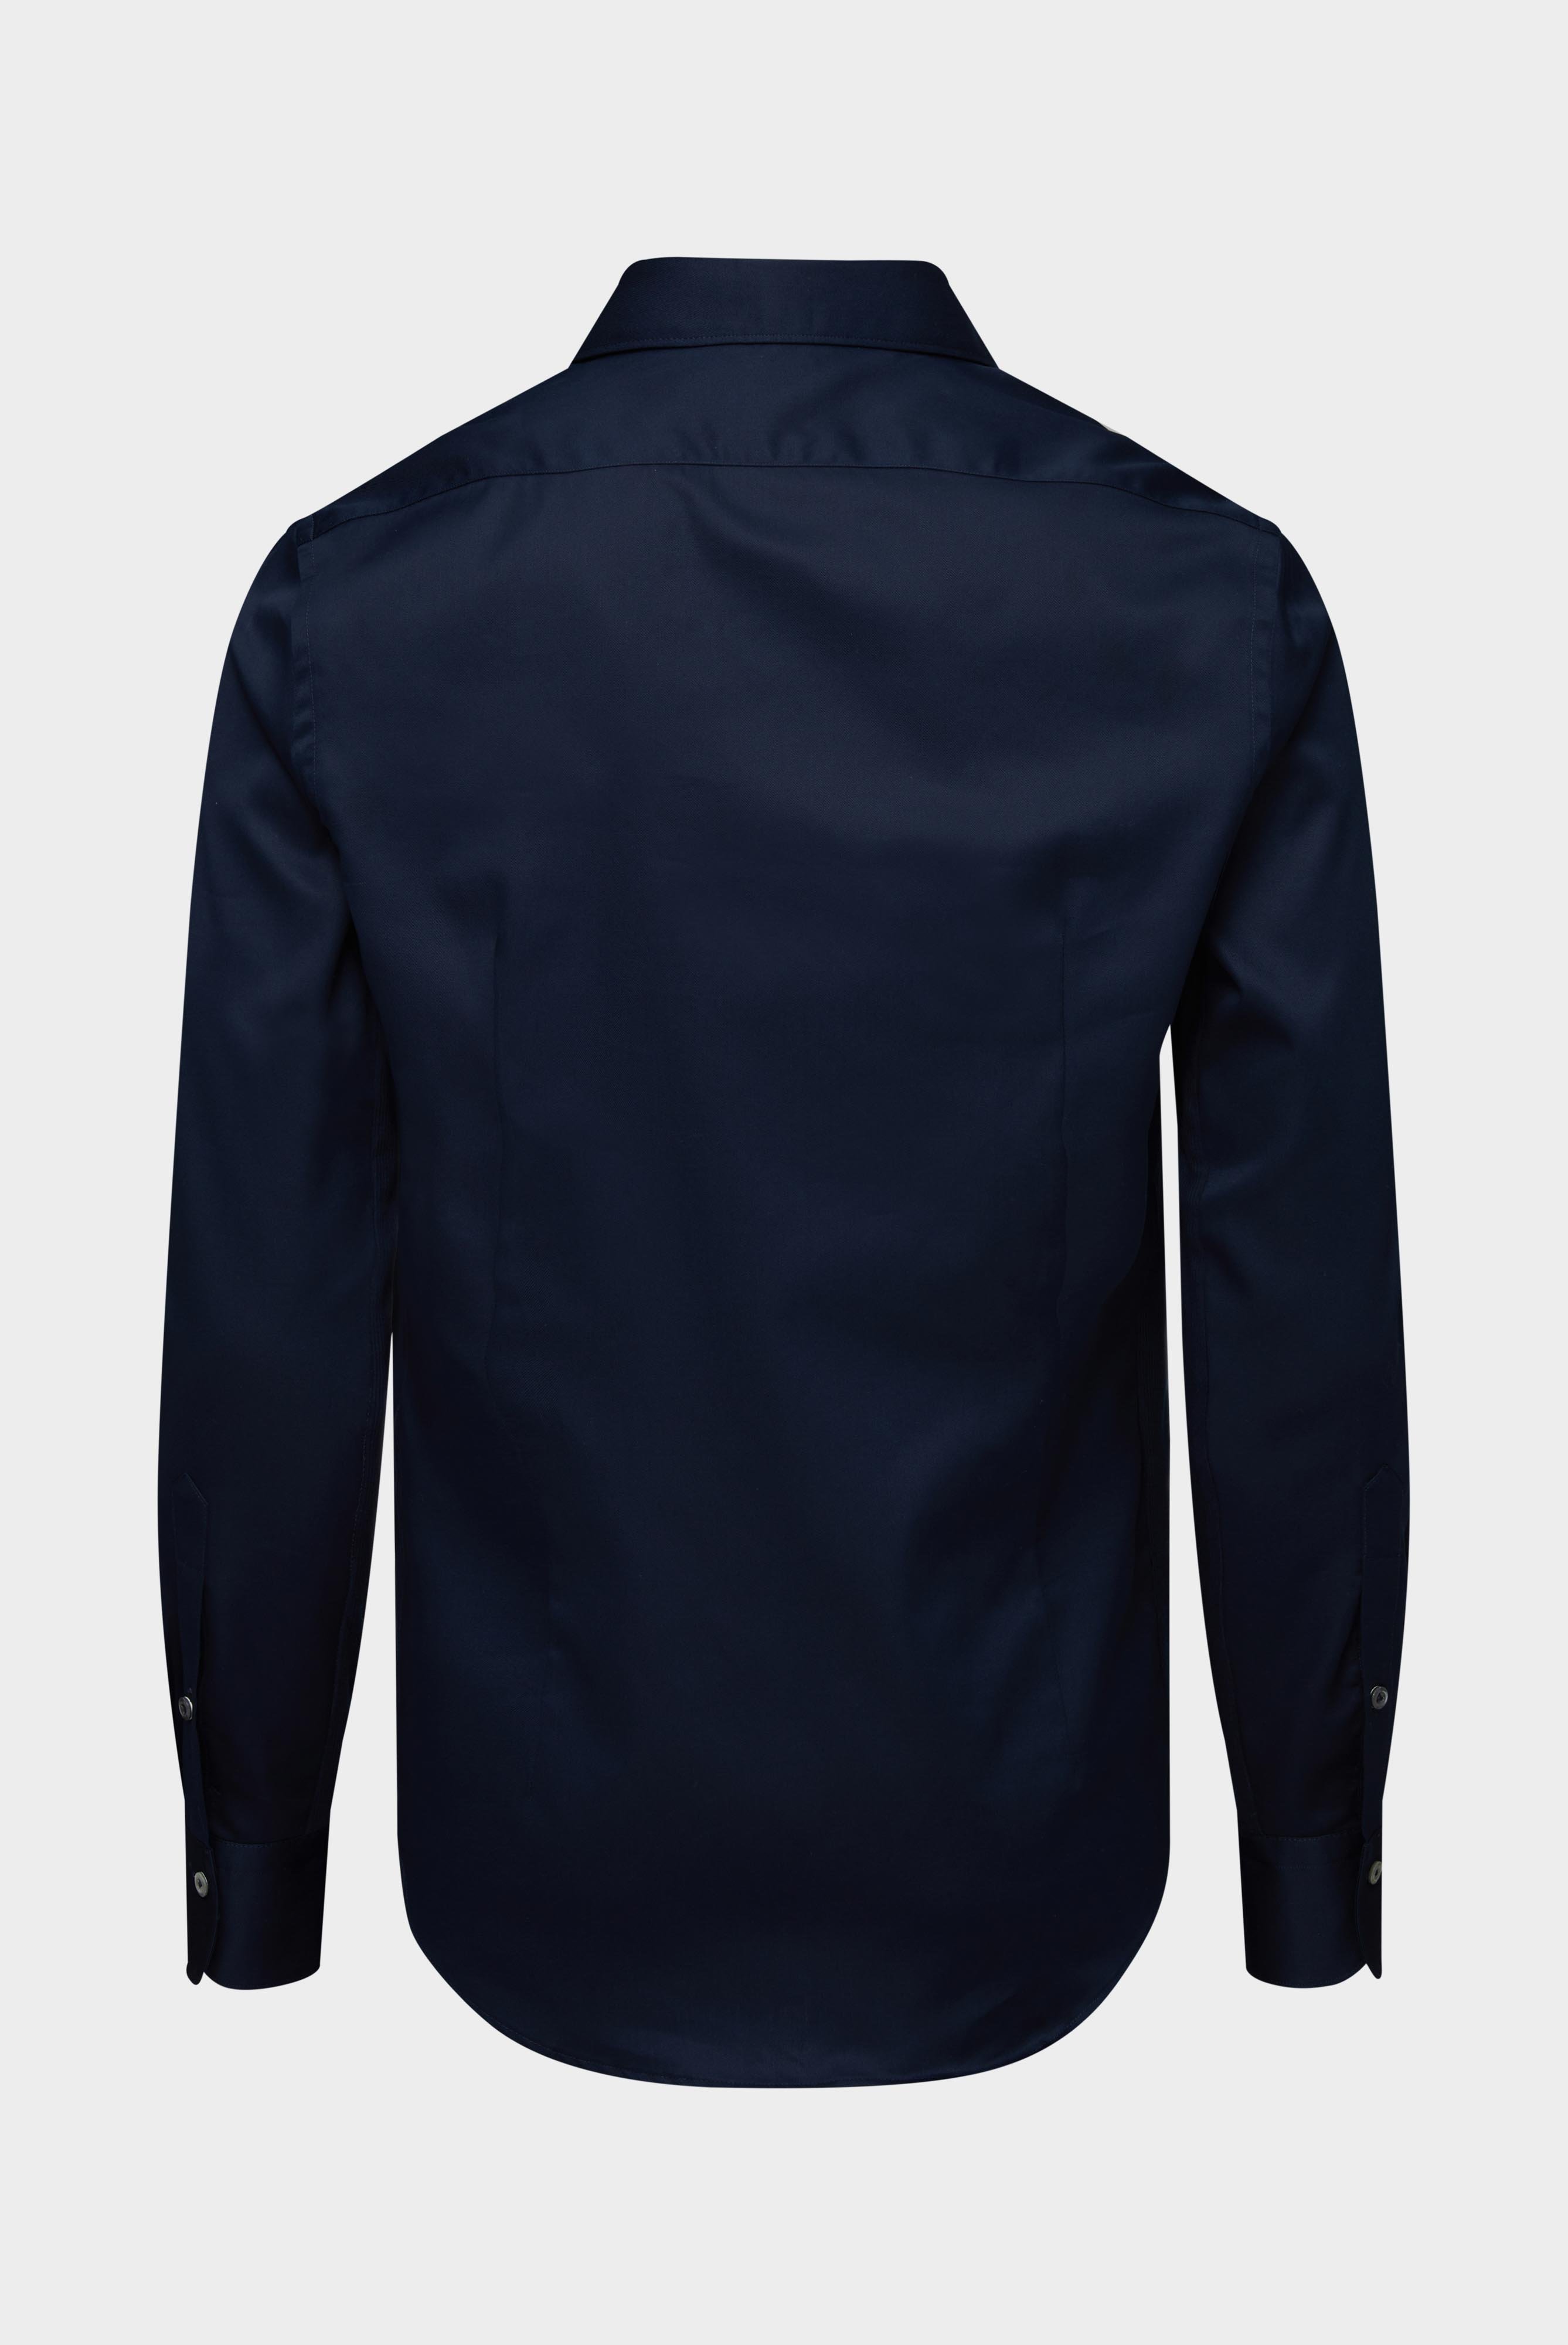 Bügelleichte Hemden+Bügelfreies Hybridshirt mit Jerseyeinsatz Slim Fit+20.2553.0F.132241.785.42